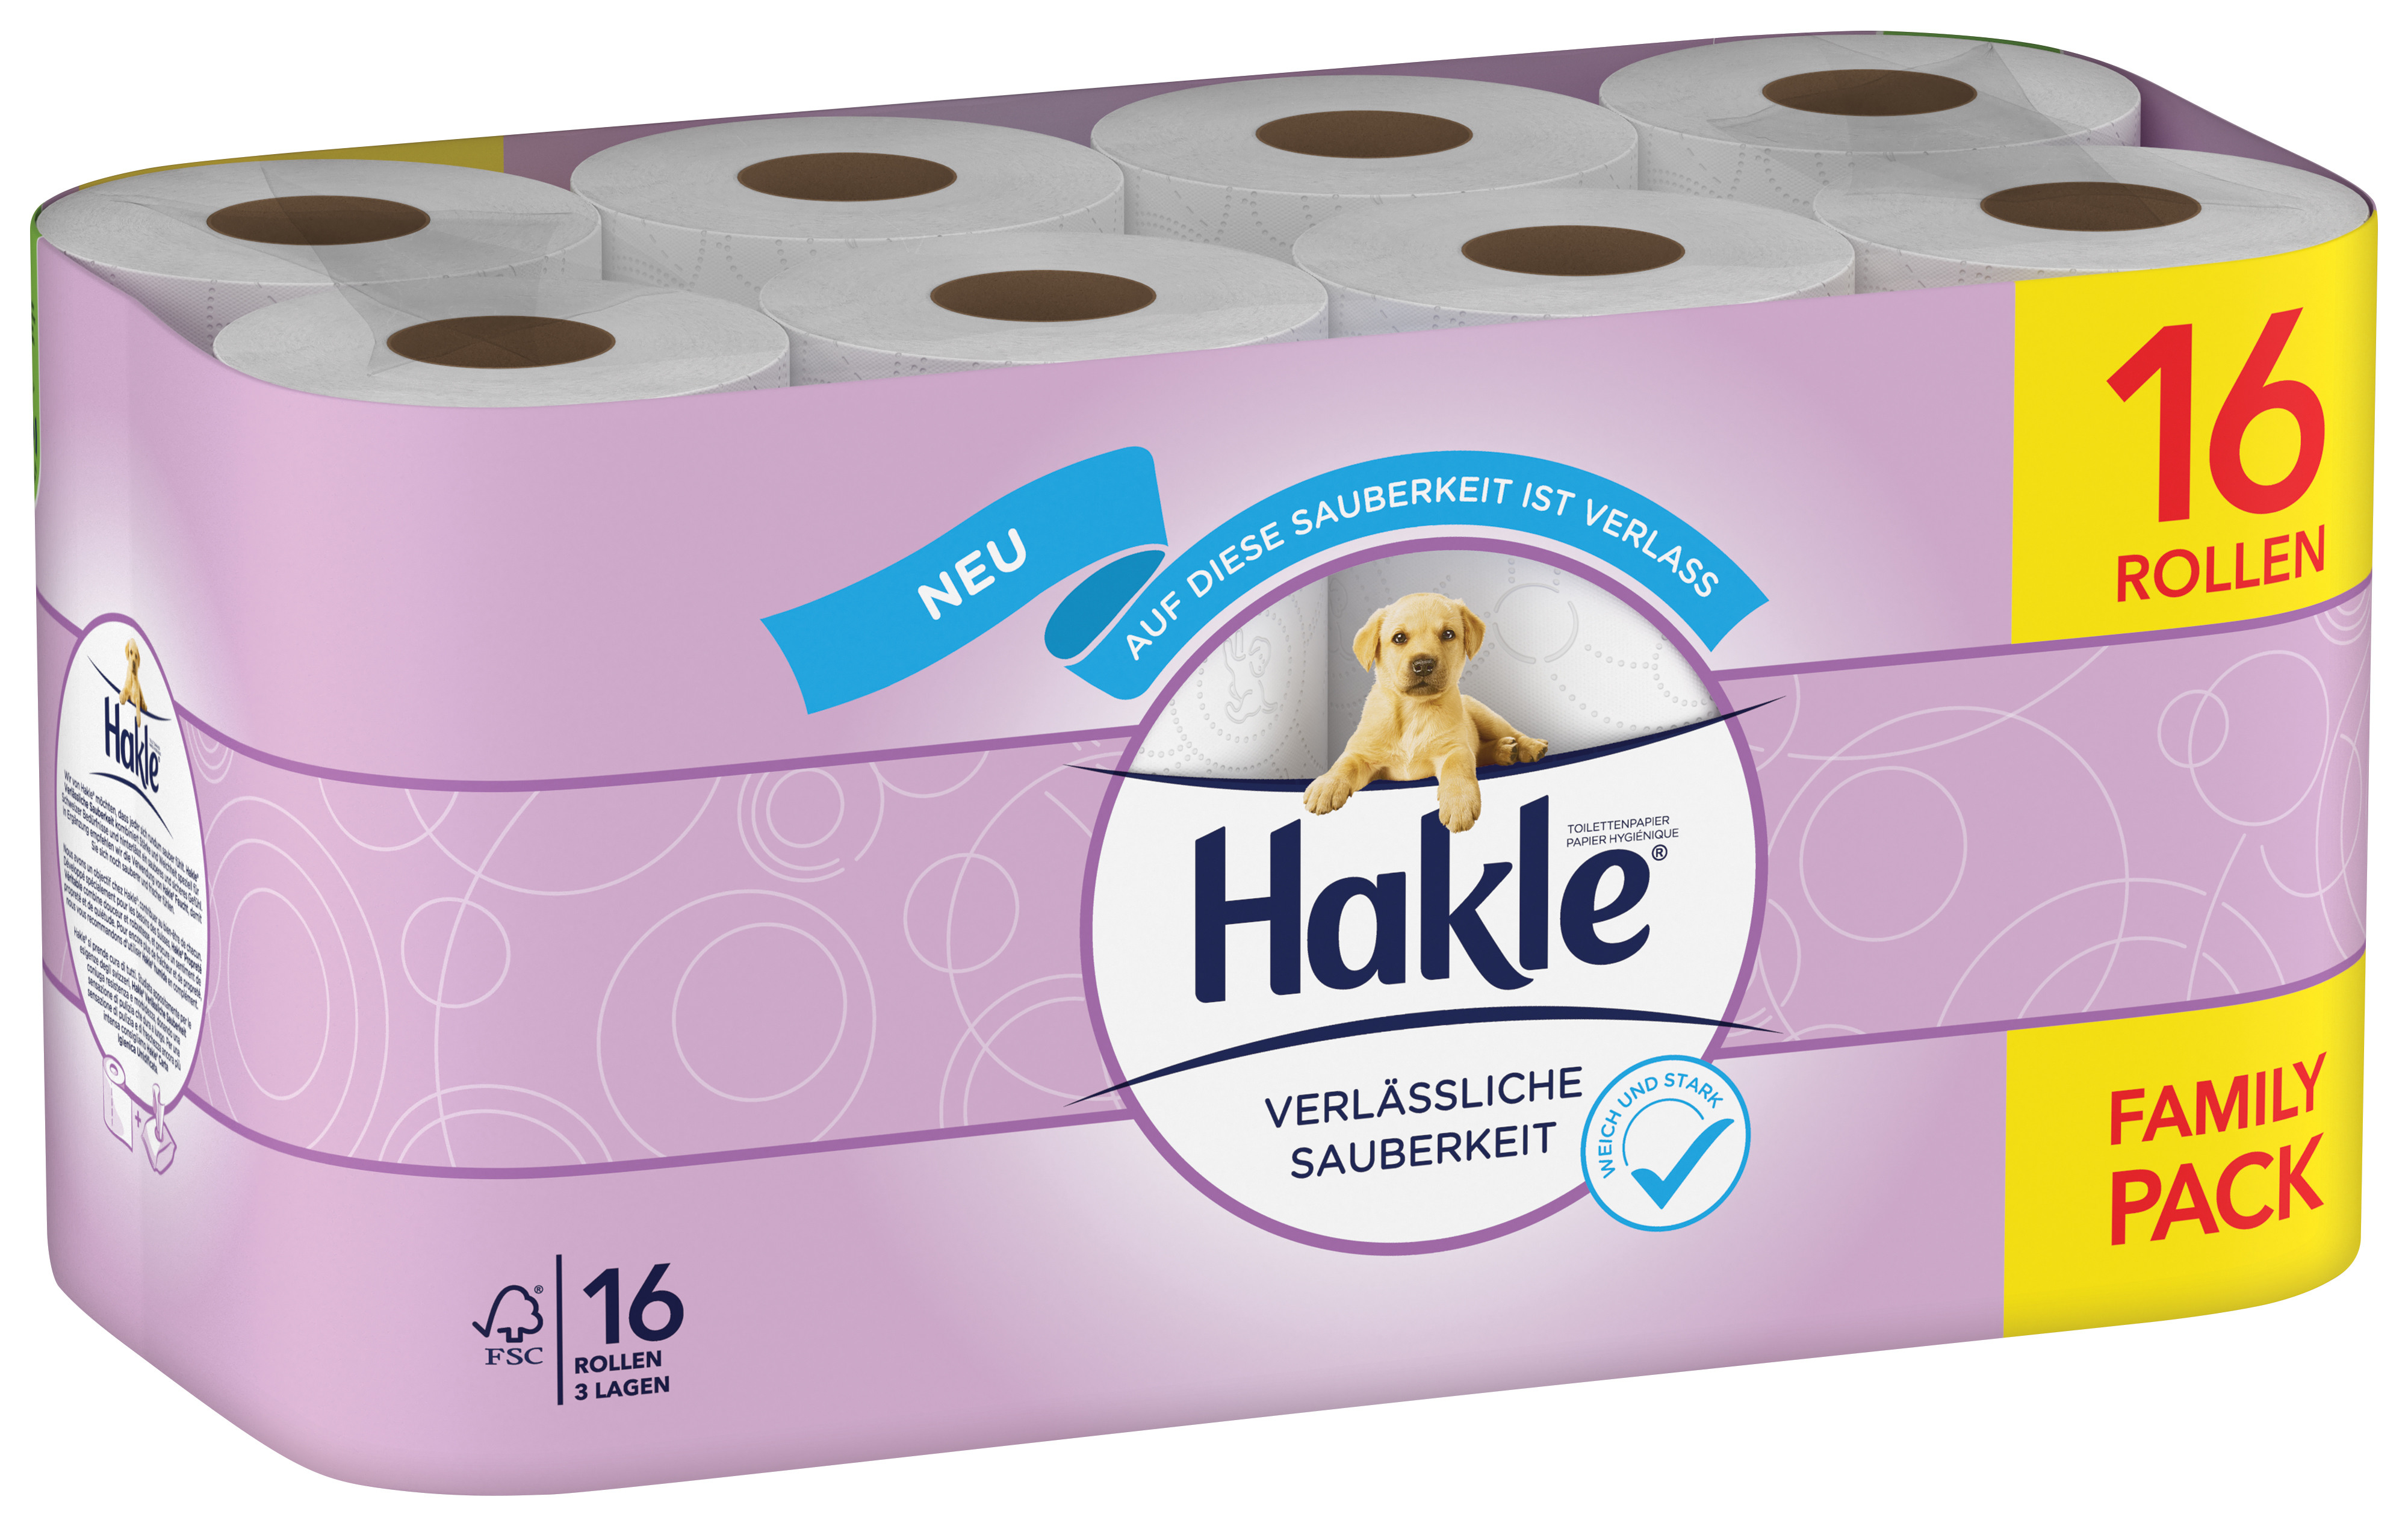 HAKLE Toilettenpapier 4161843 16 Rollen